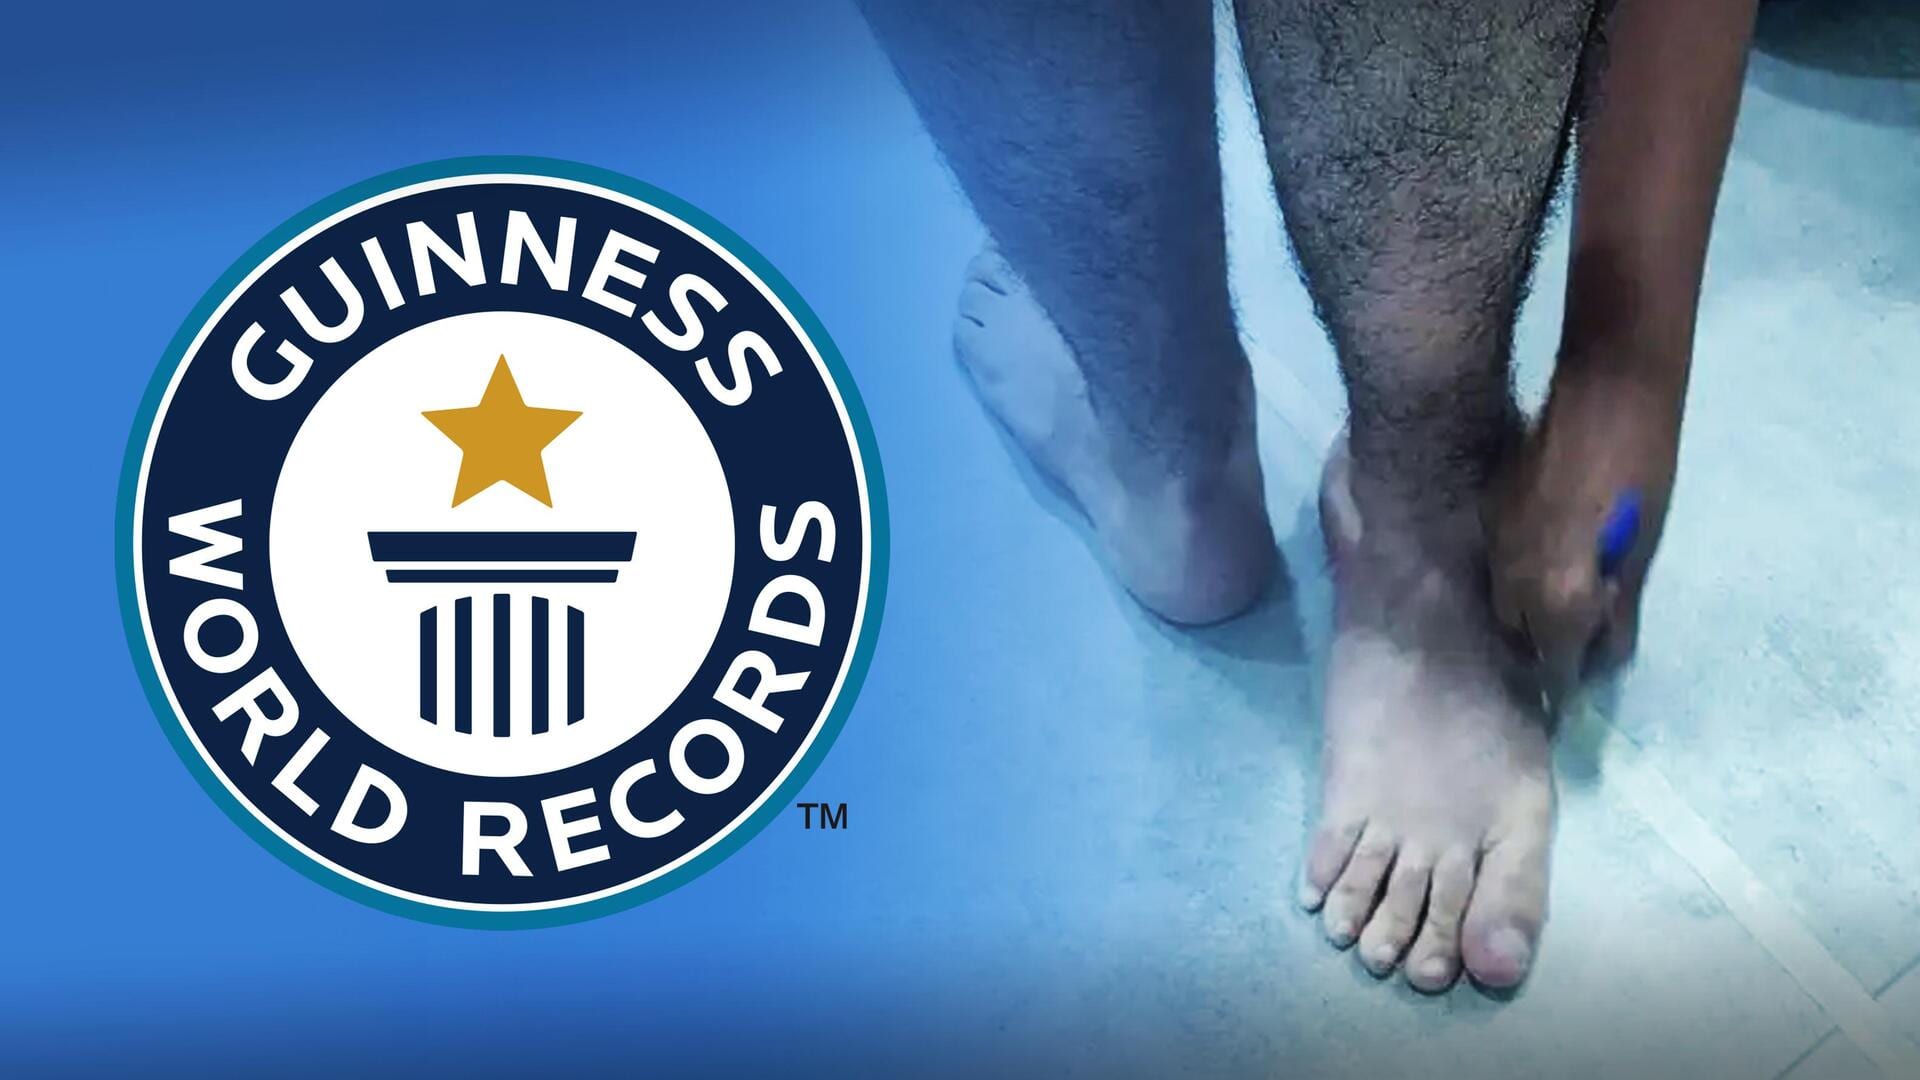 ब्राजील: यह व्यक्ति उल्टे कर लेता है अपने पैर, 210 डिग्री घुमाकर बनाया विश्व रिकॉर्ड 